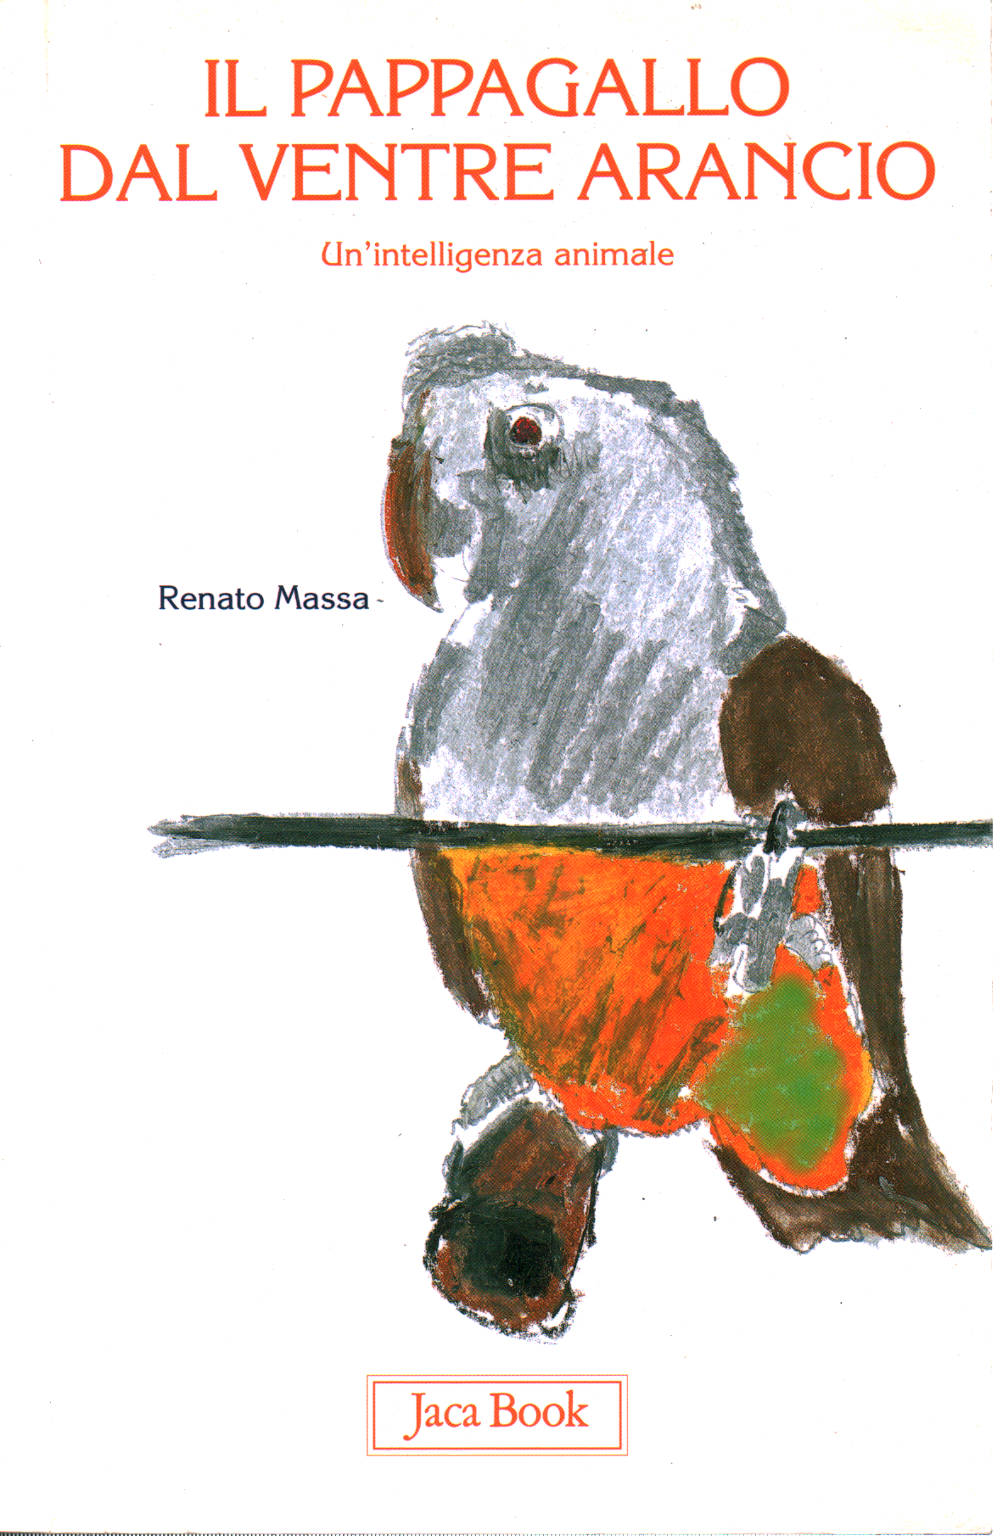 Il pappagallo dal ventre arancio, Renato Massa